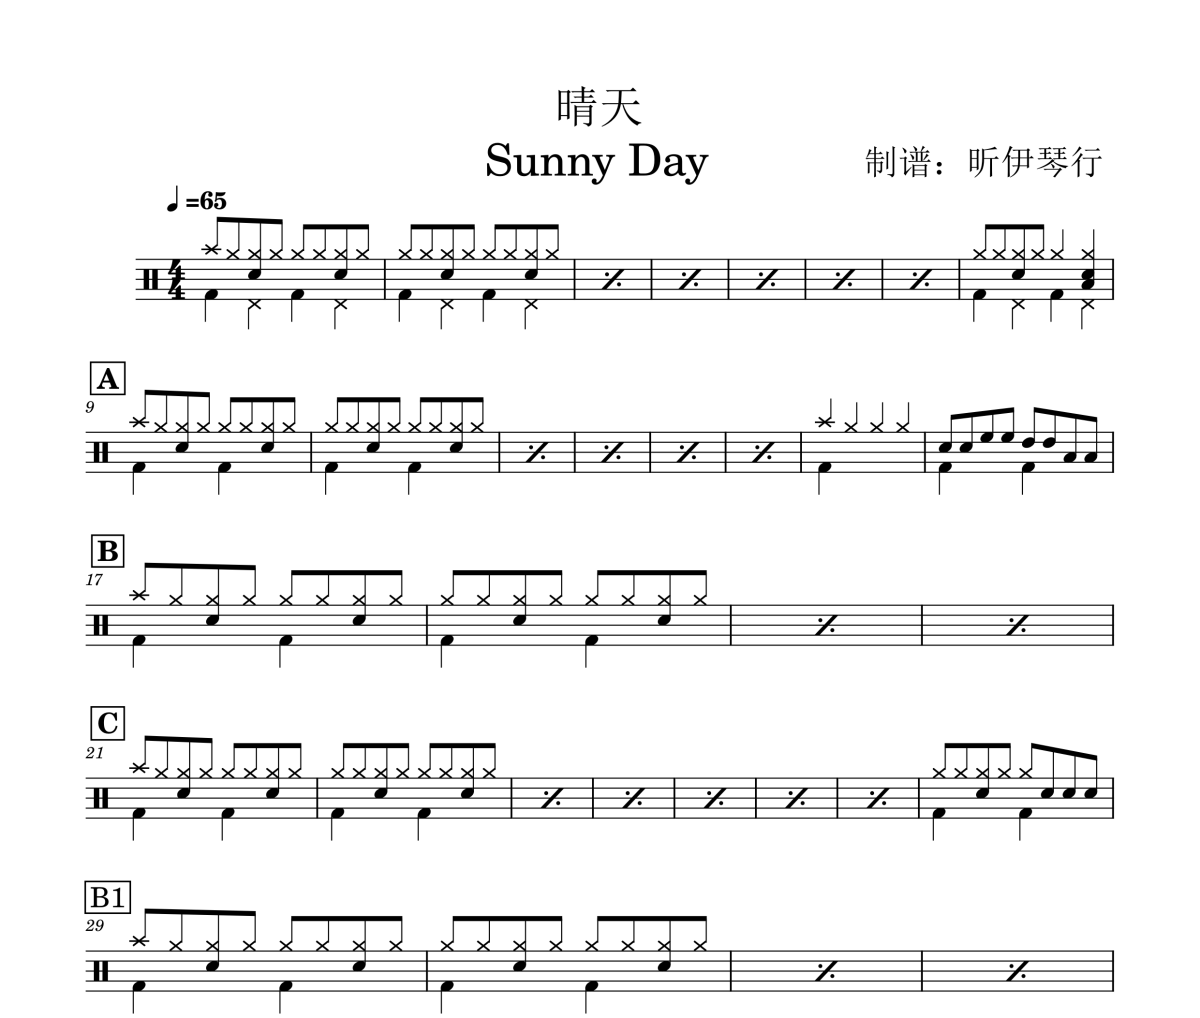 初学曲目-晴天Sunny Day架子鼓|爵士鼓|鼓谱+动态鼓谱视频